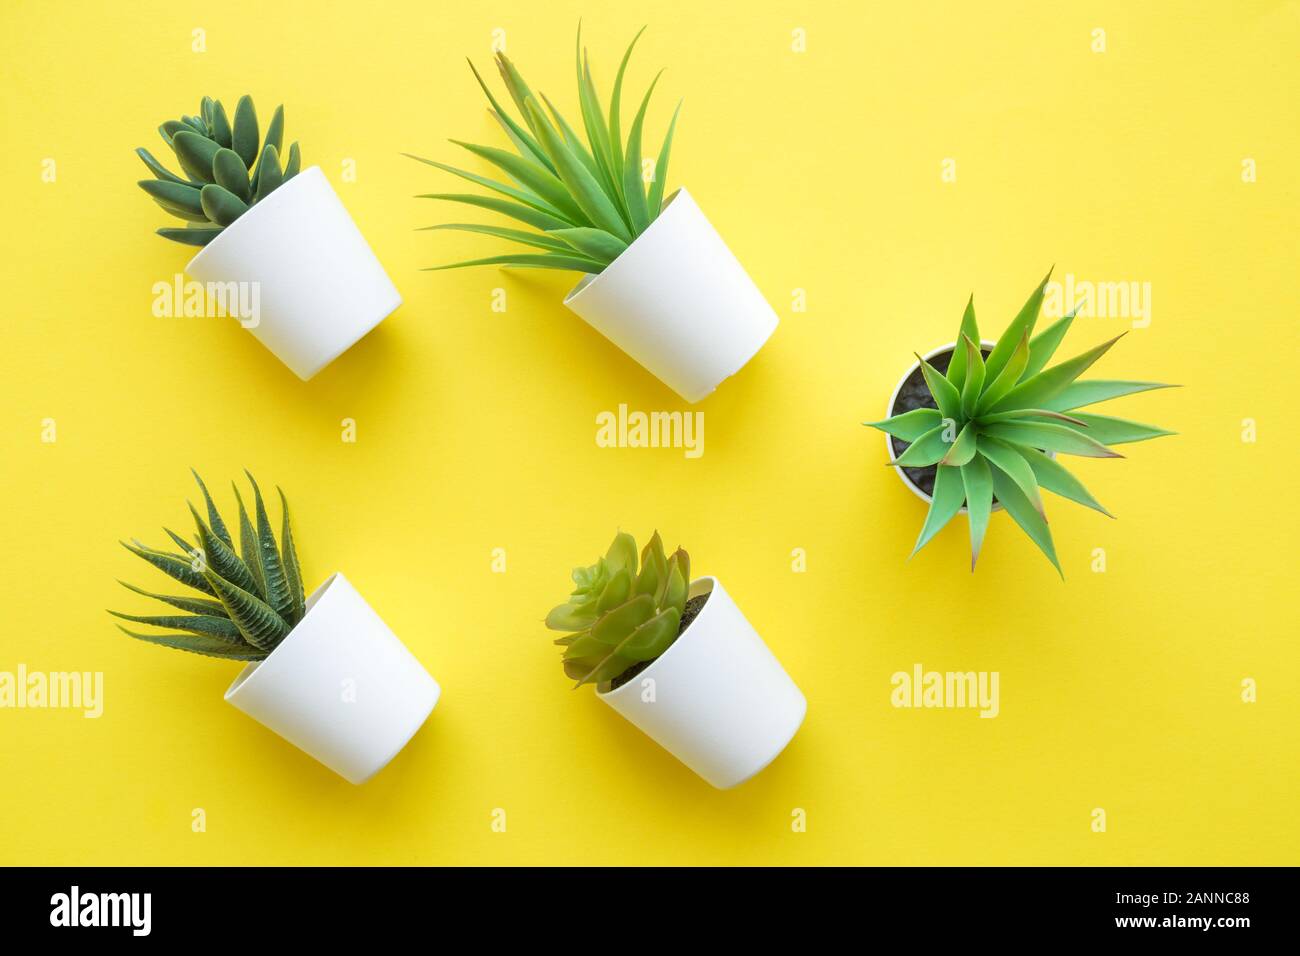 Flach der verschiedenen Haus Topfpflanzen auf gelbem Hintergrund minimal Creative Home Decor Konzept. Stockfoto